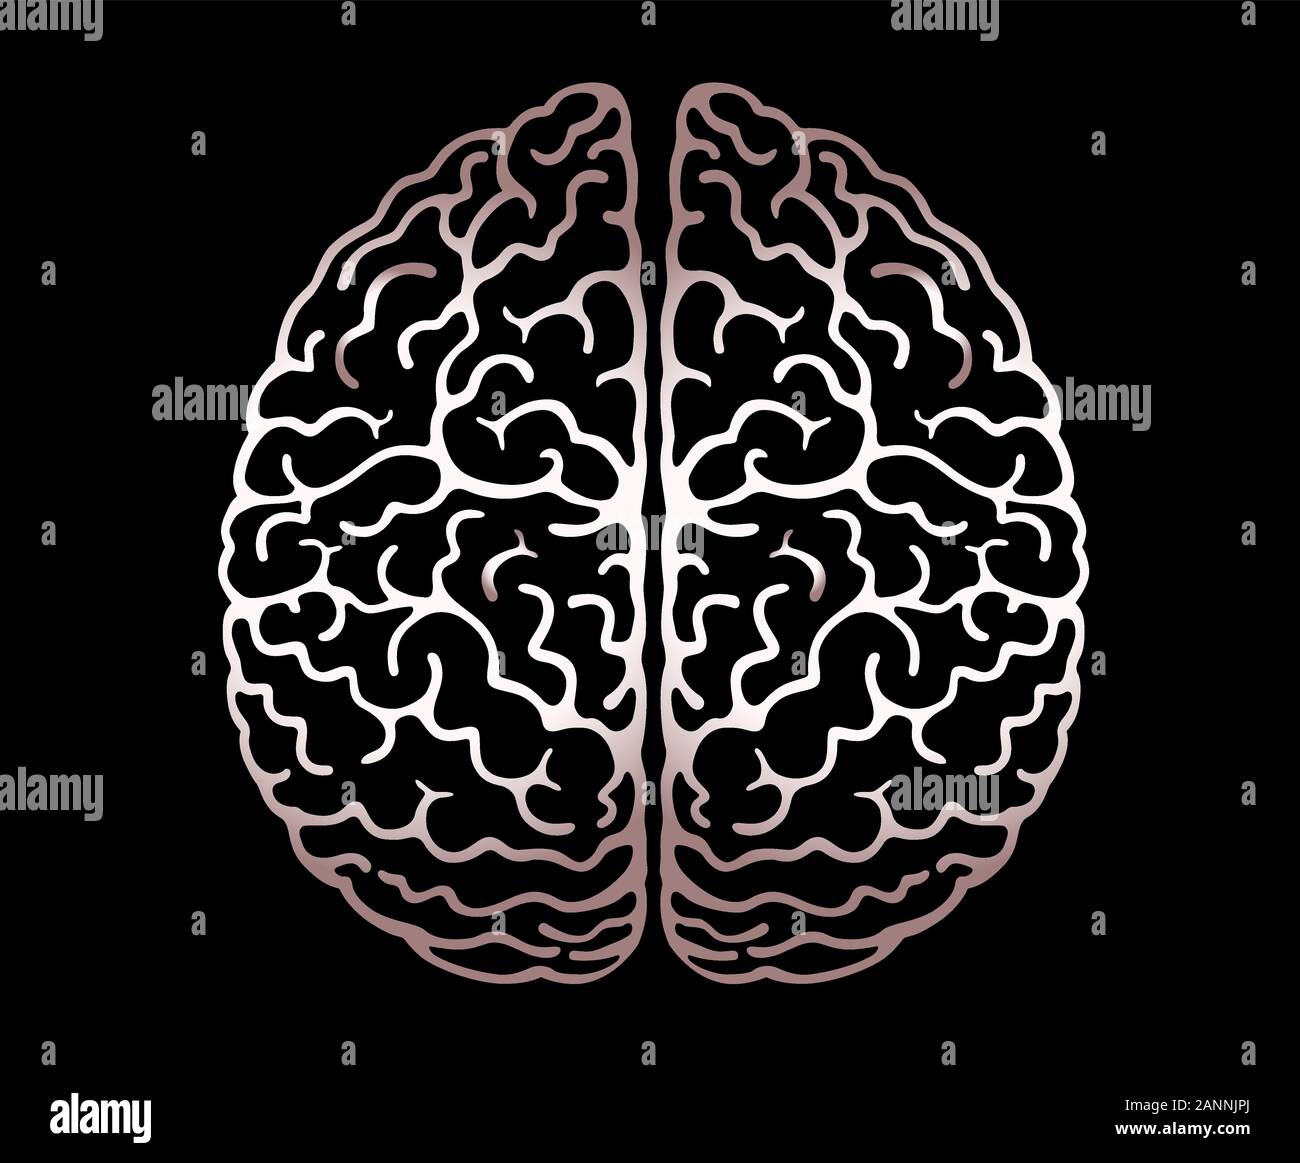 Profilo di vettore illustrazione del cervello umano su sfondo nero. Emisferi cerebrali, convoluzioni della mente il cervello, il cervello della piega. Vista da sopra, Illustrazione Vettoriale